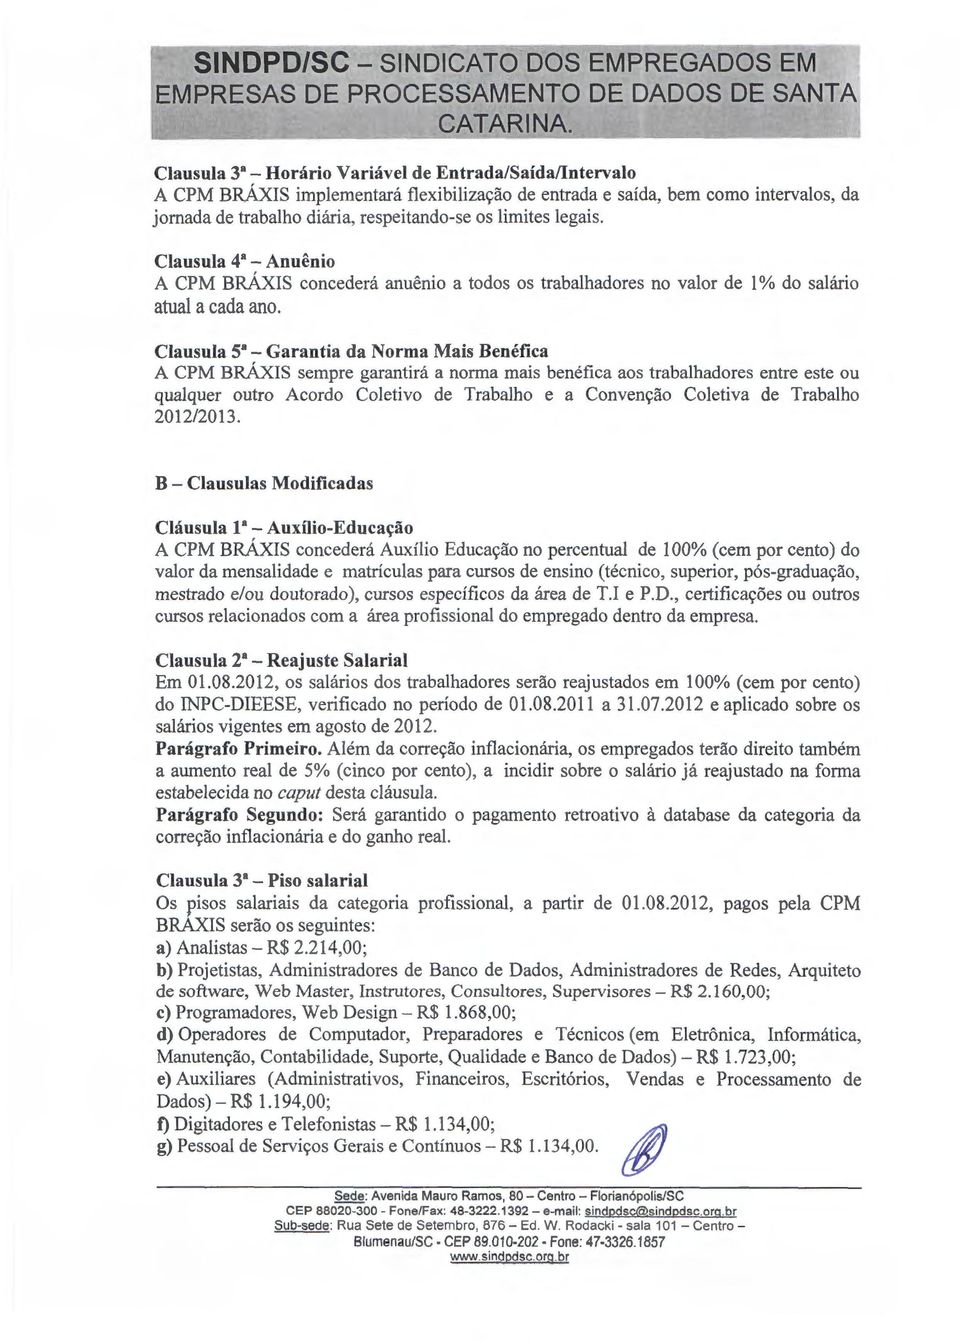 Clausula 4a- Anuenio A CPM BRAXIS concedera anuenio a todos os trabalhadores no valor de 1% do sahirio atual a cada ano.